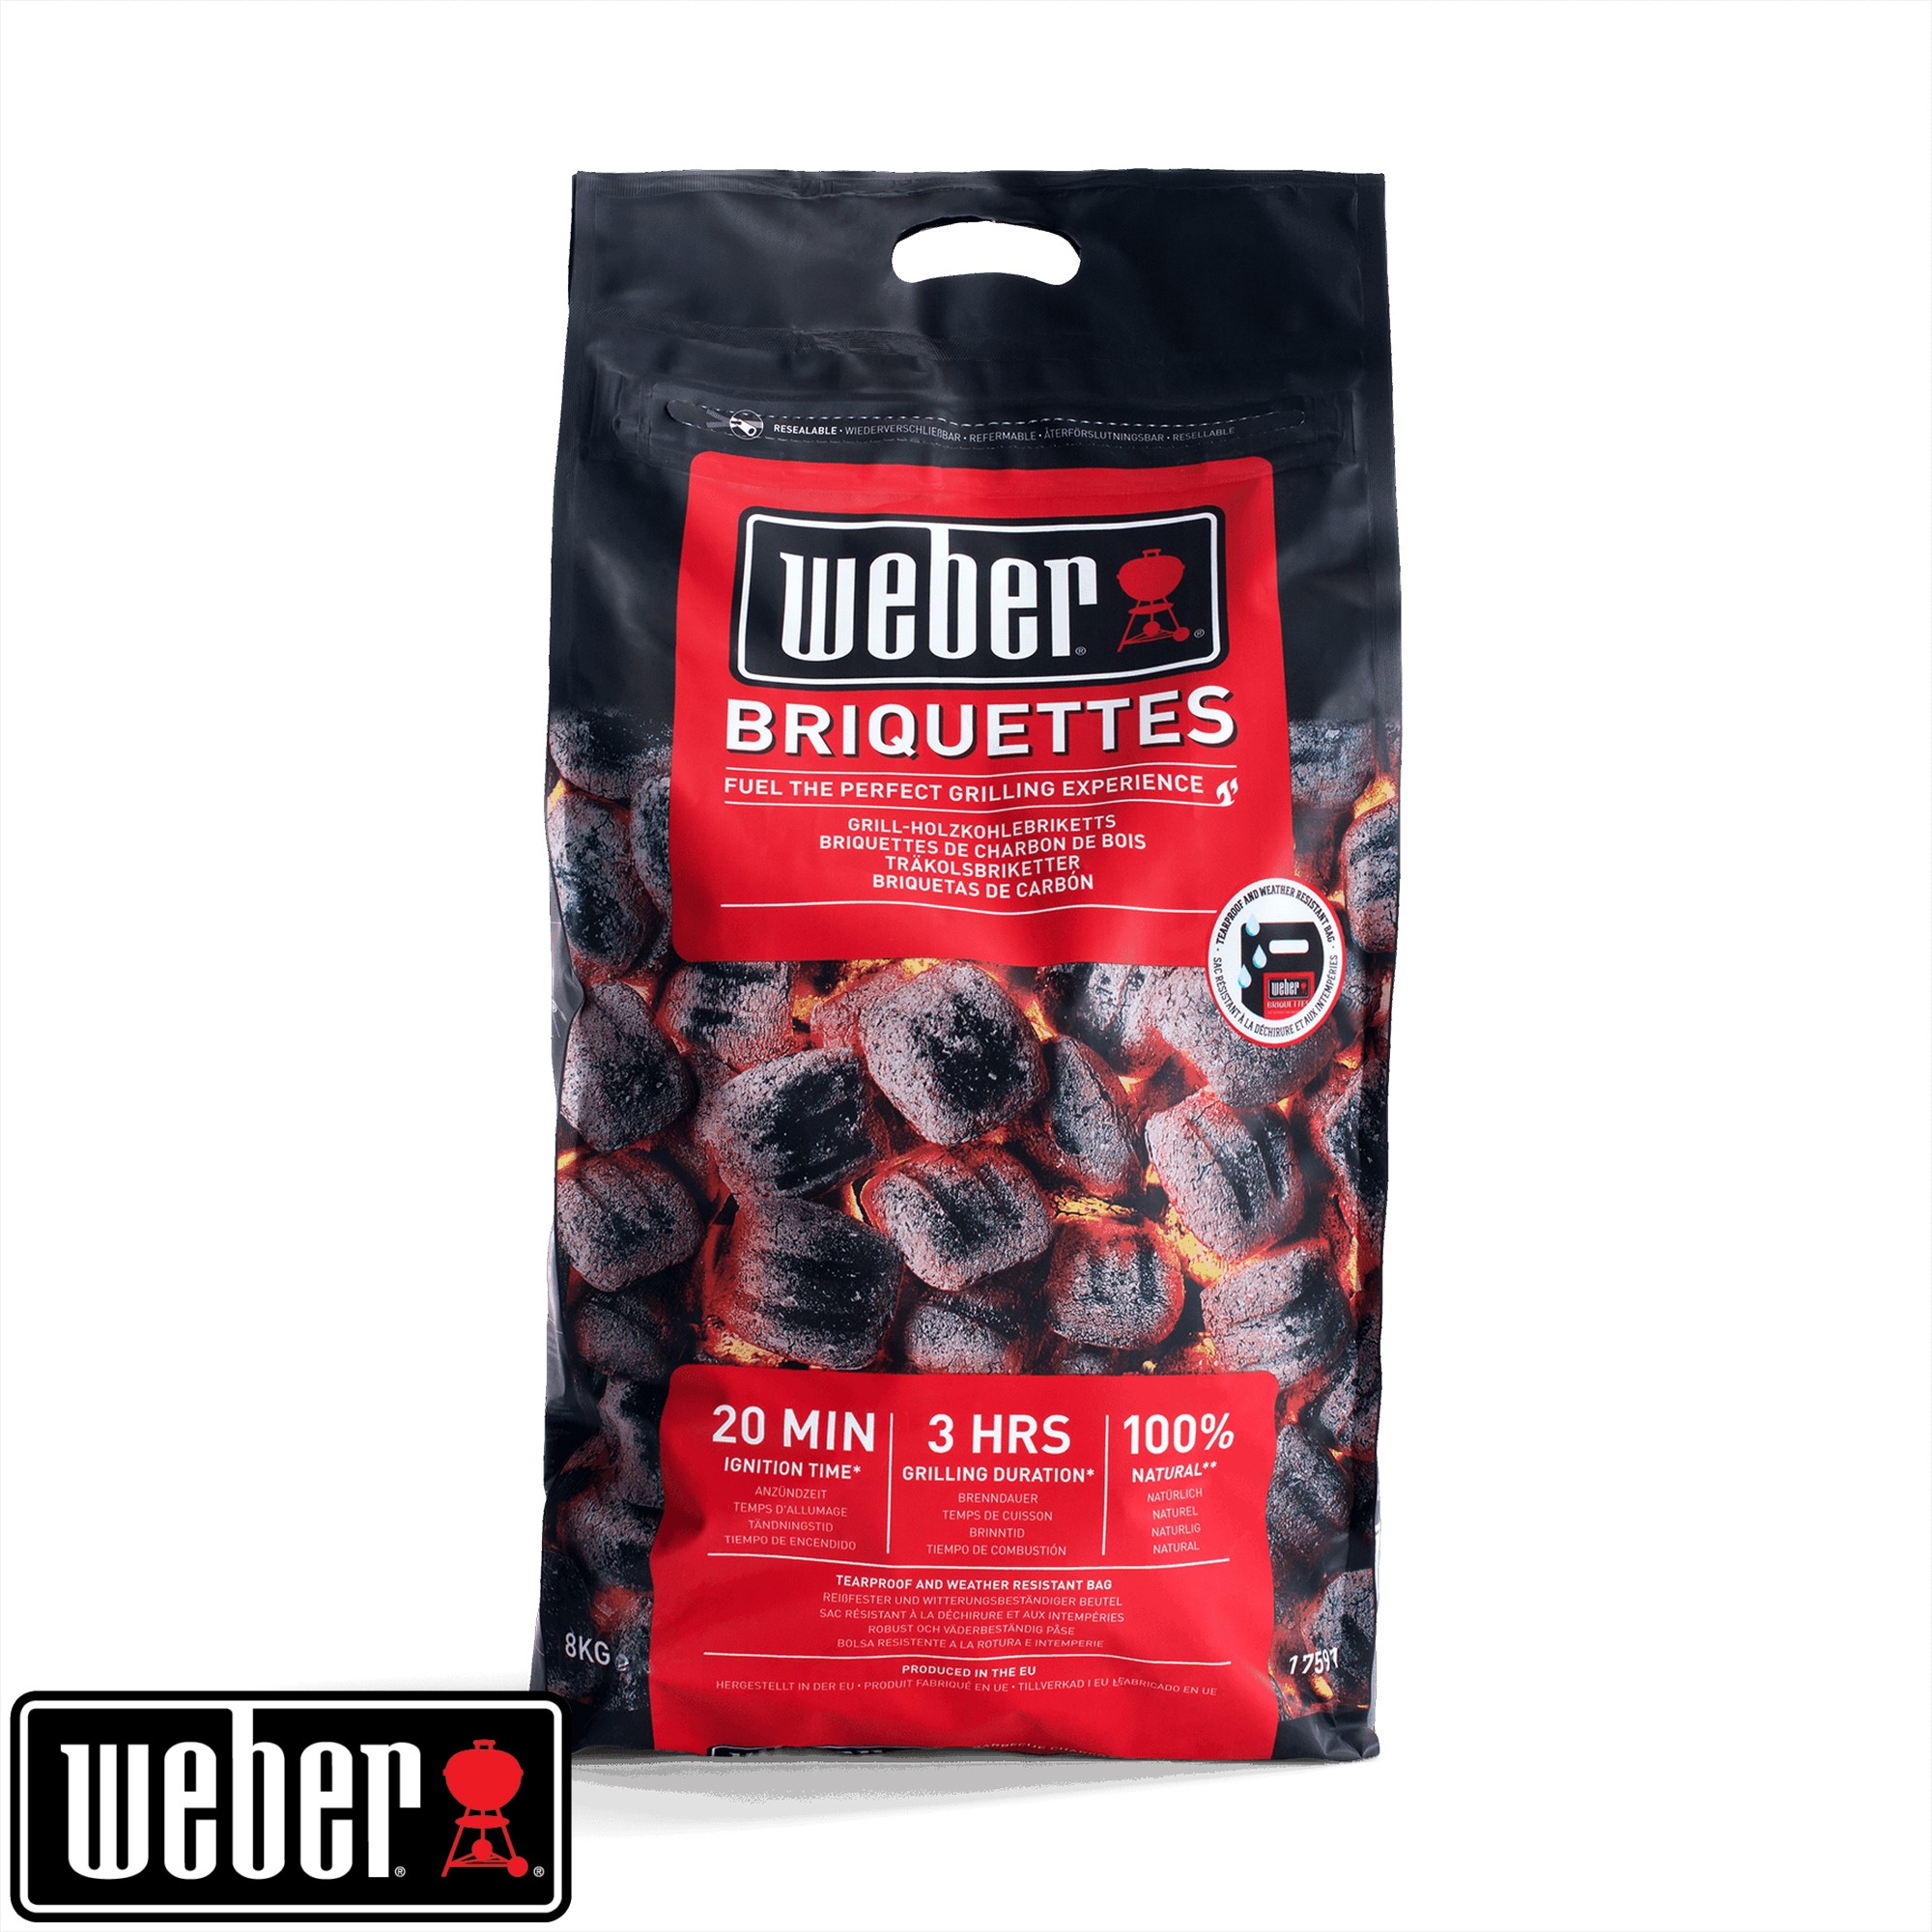 Weber charcoal briquettes 8kg (8 Kg)